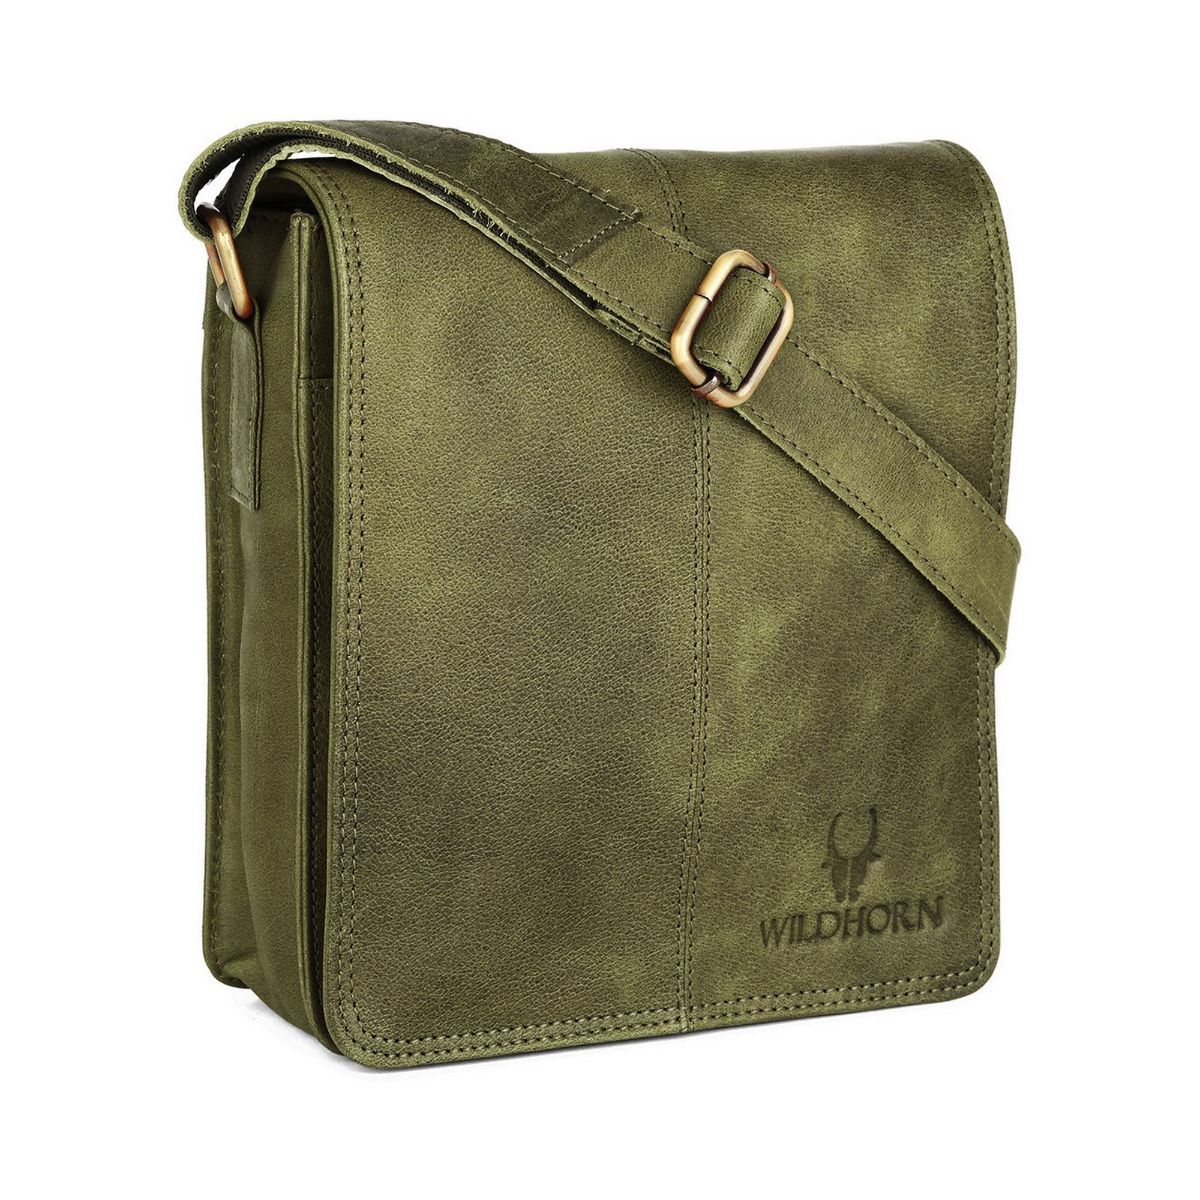 Buy WILDHORN Original Leather 115 inch Messenger Bag for Men I  Multipurpose Bag I Office Bag I Travel Bag with Adjustable Strap WALNUT   Lowest price in India GlowRoad